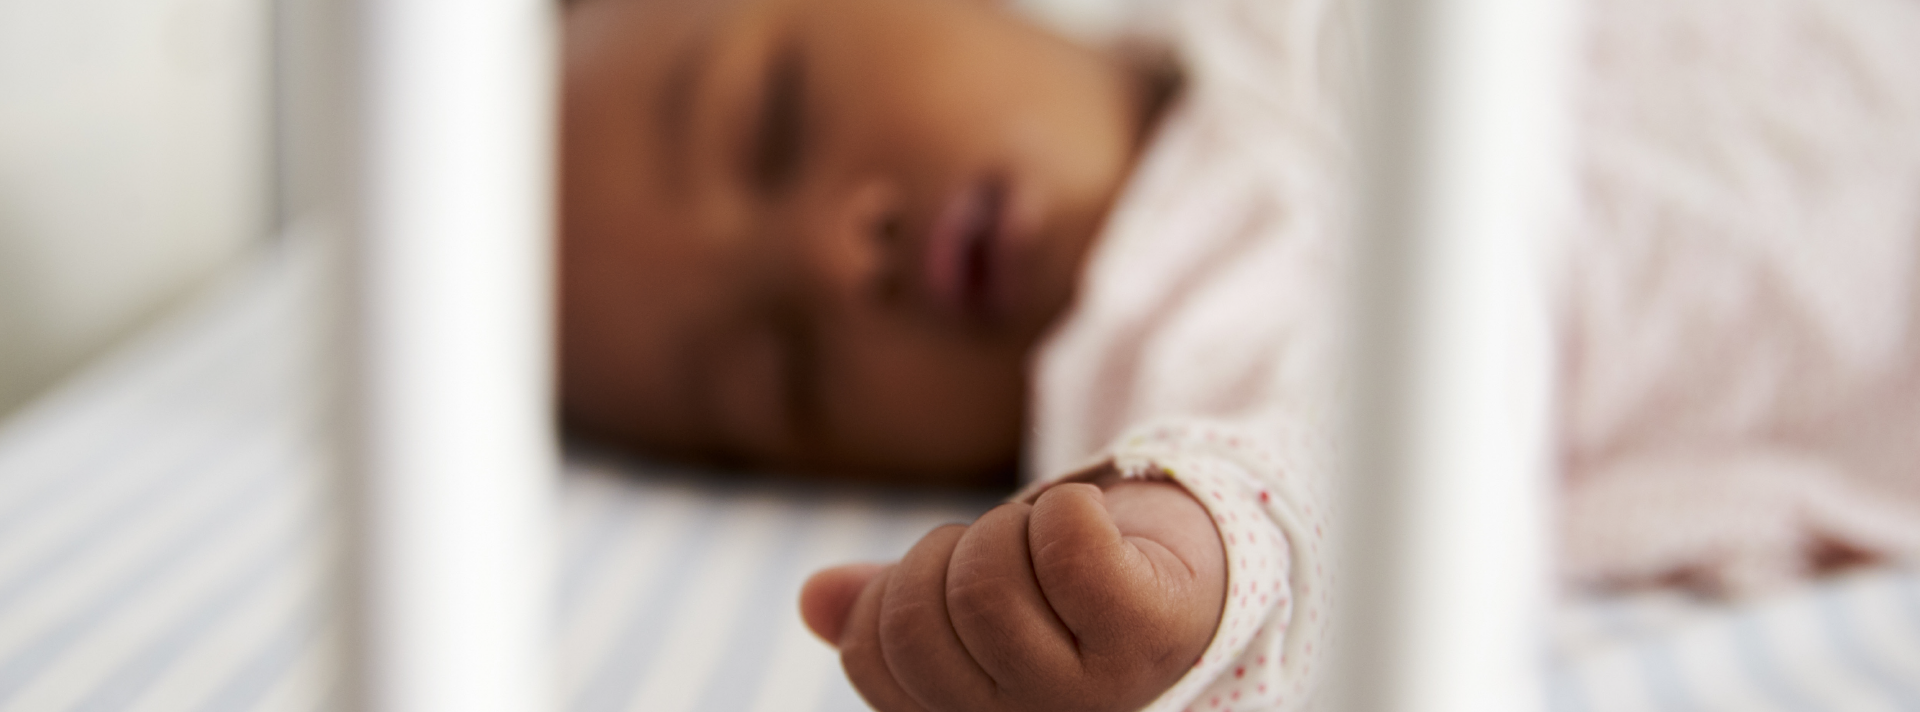 Cuáles hamacas para bebé está retirando la CPSC por peligro de asfixia? -  El Diario NY